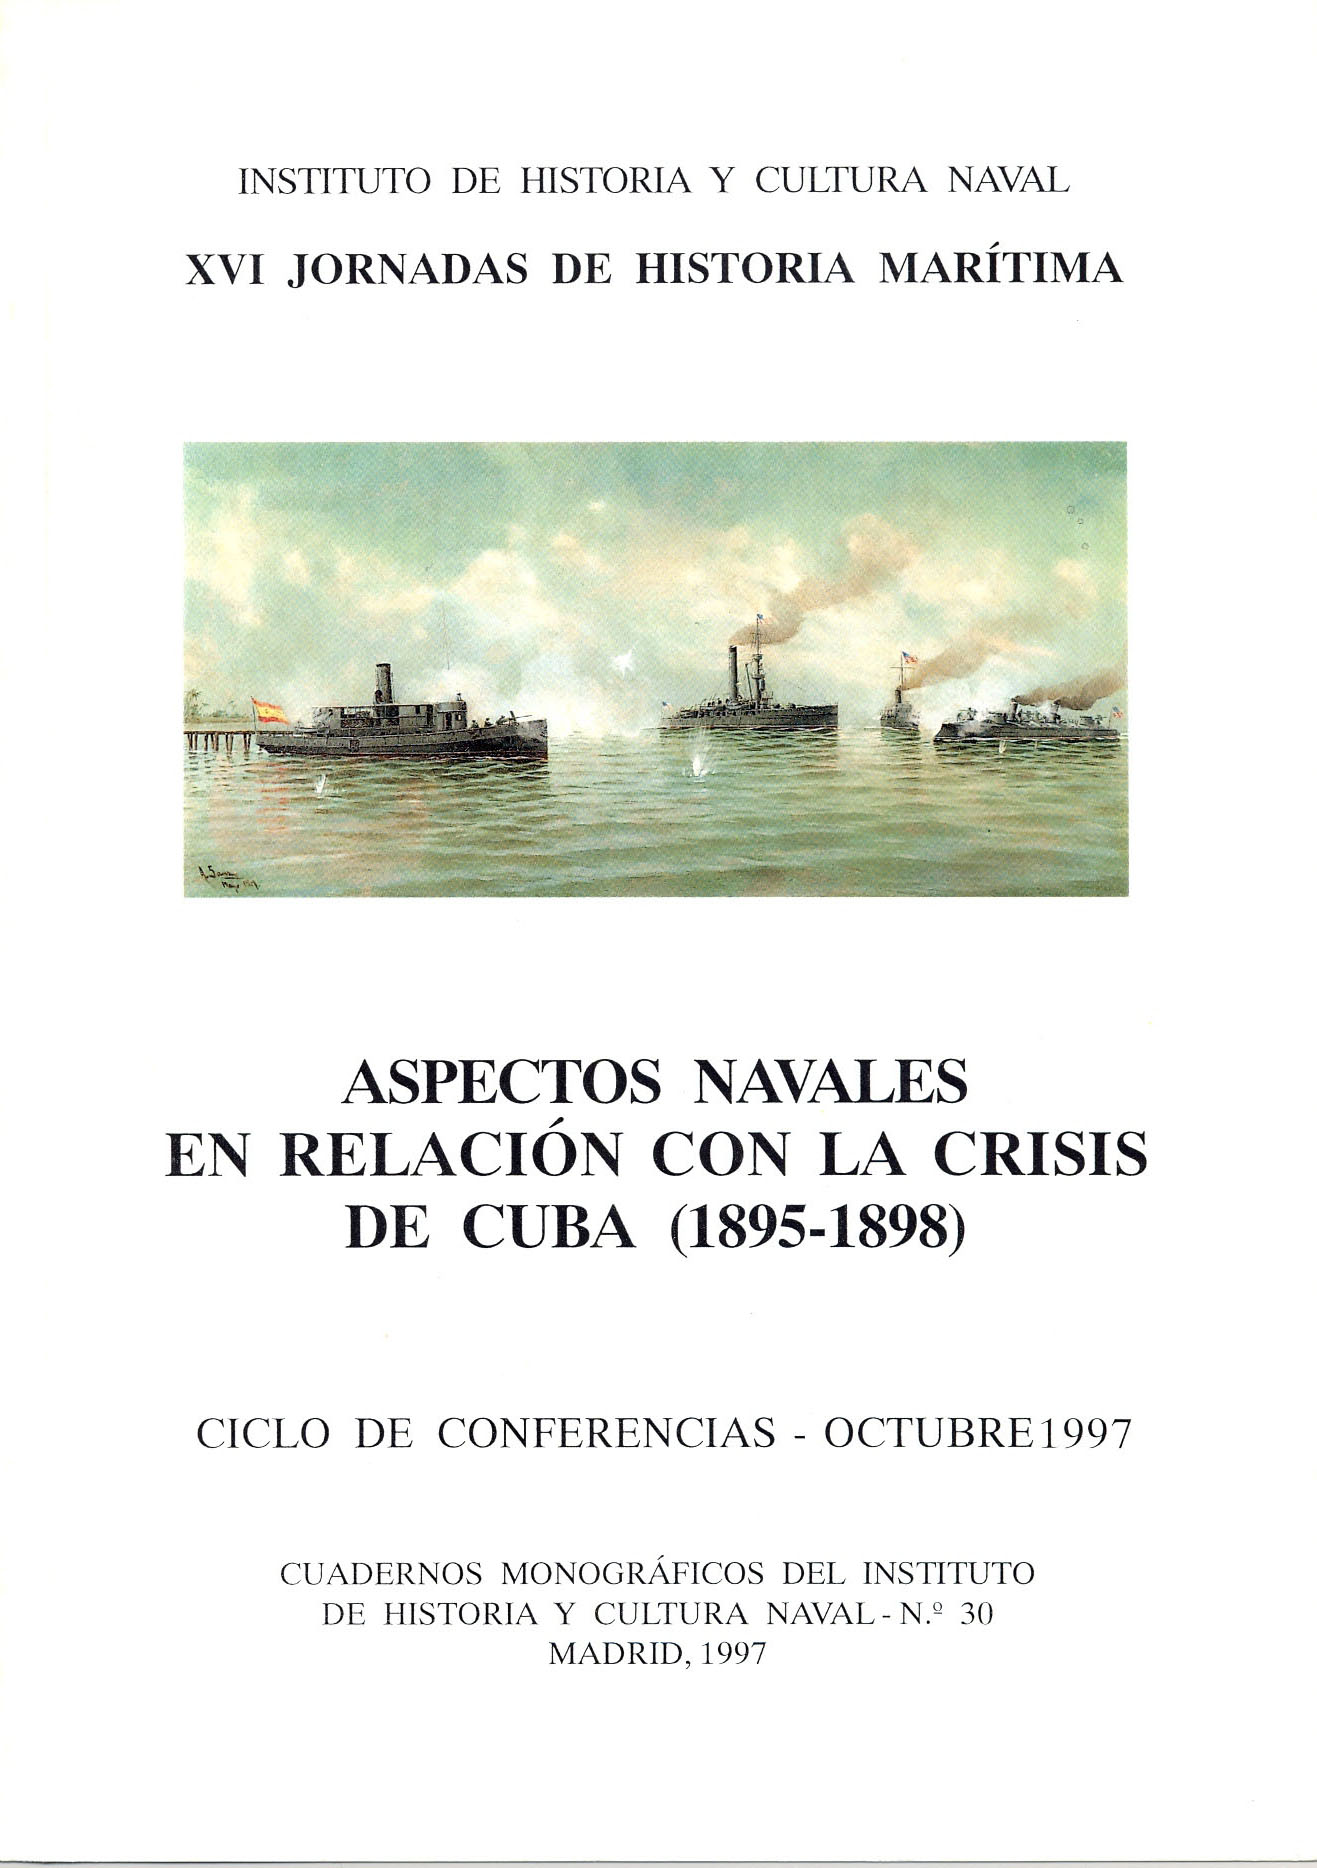 Aspectos navales en relación con la crisis de Cuba (1895-1898)